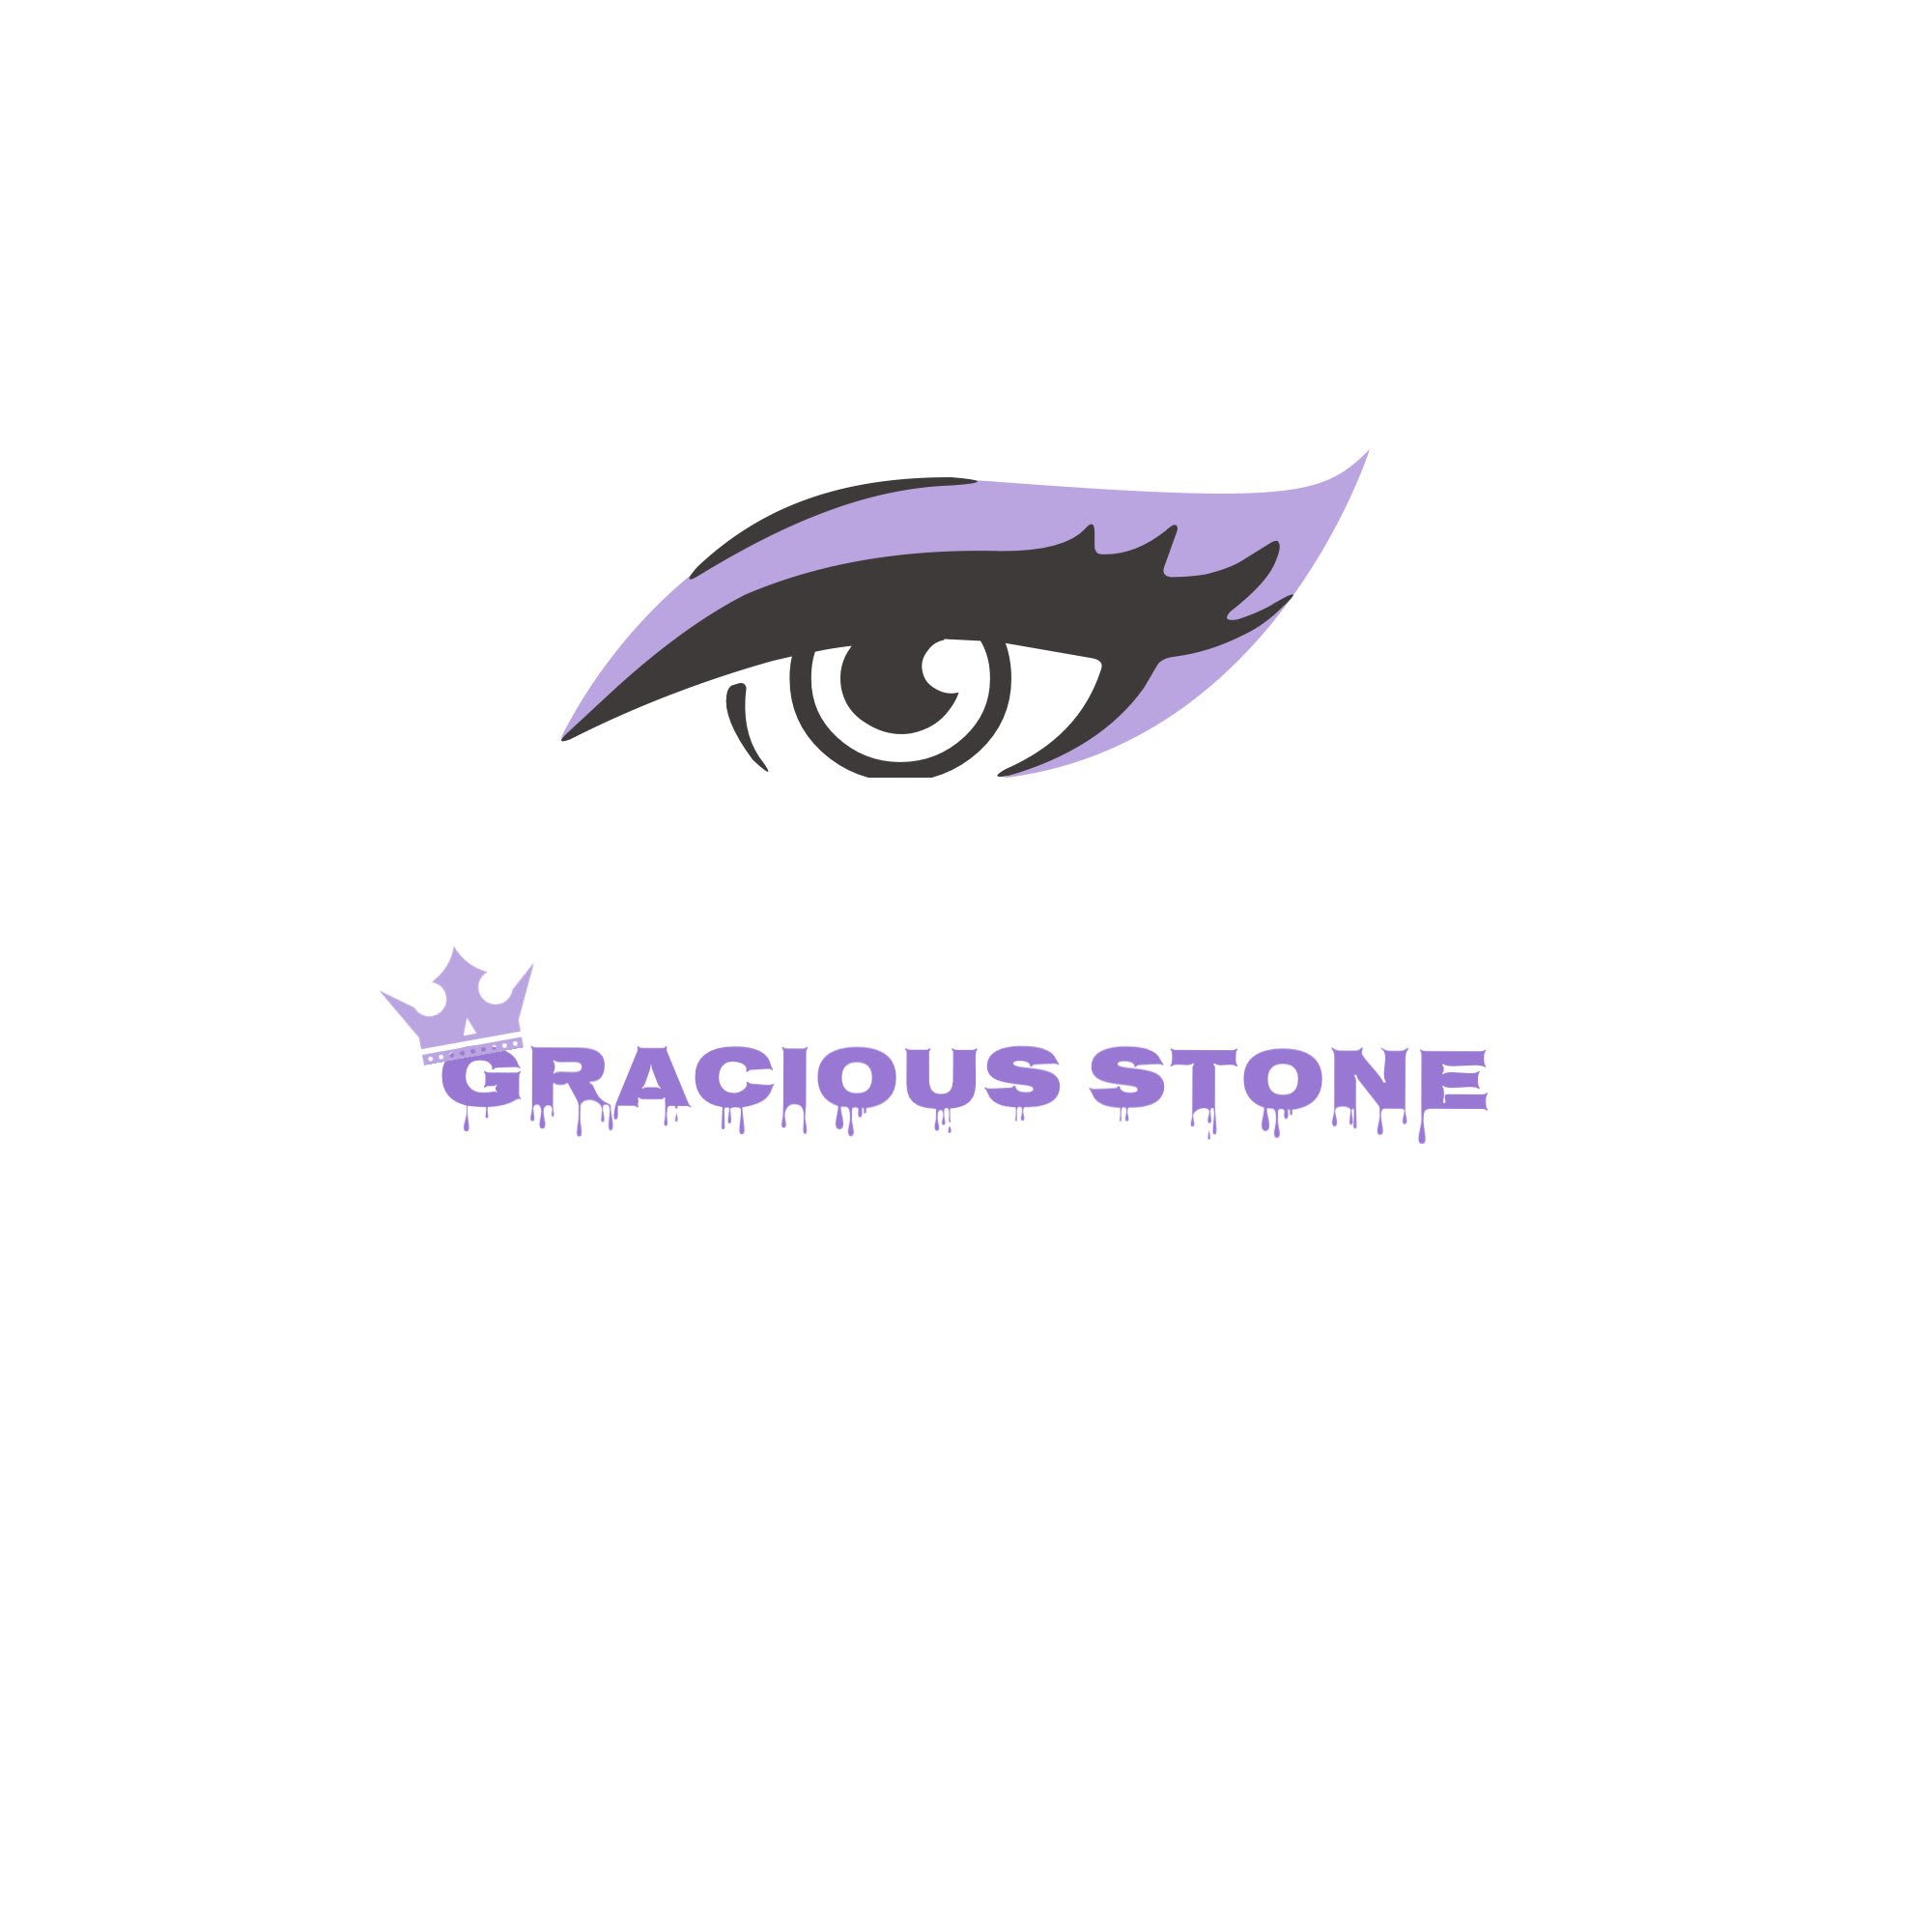 Gracious stone 